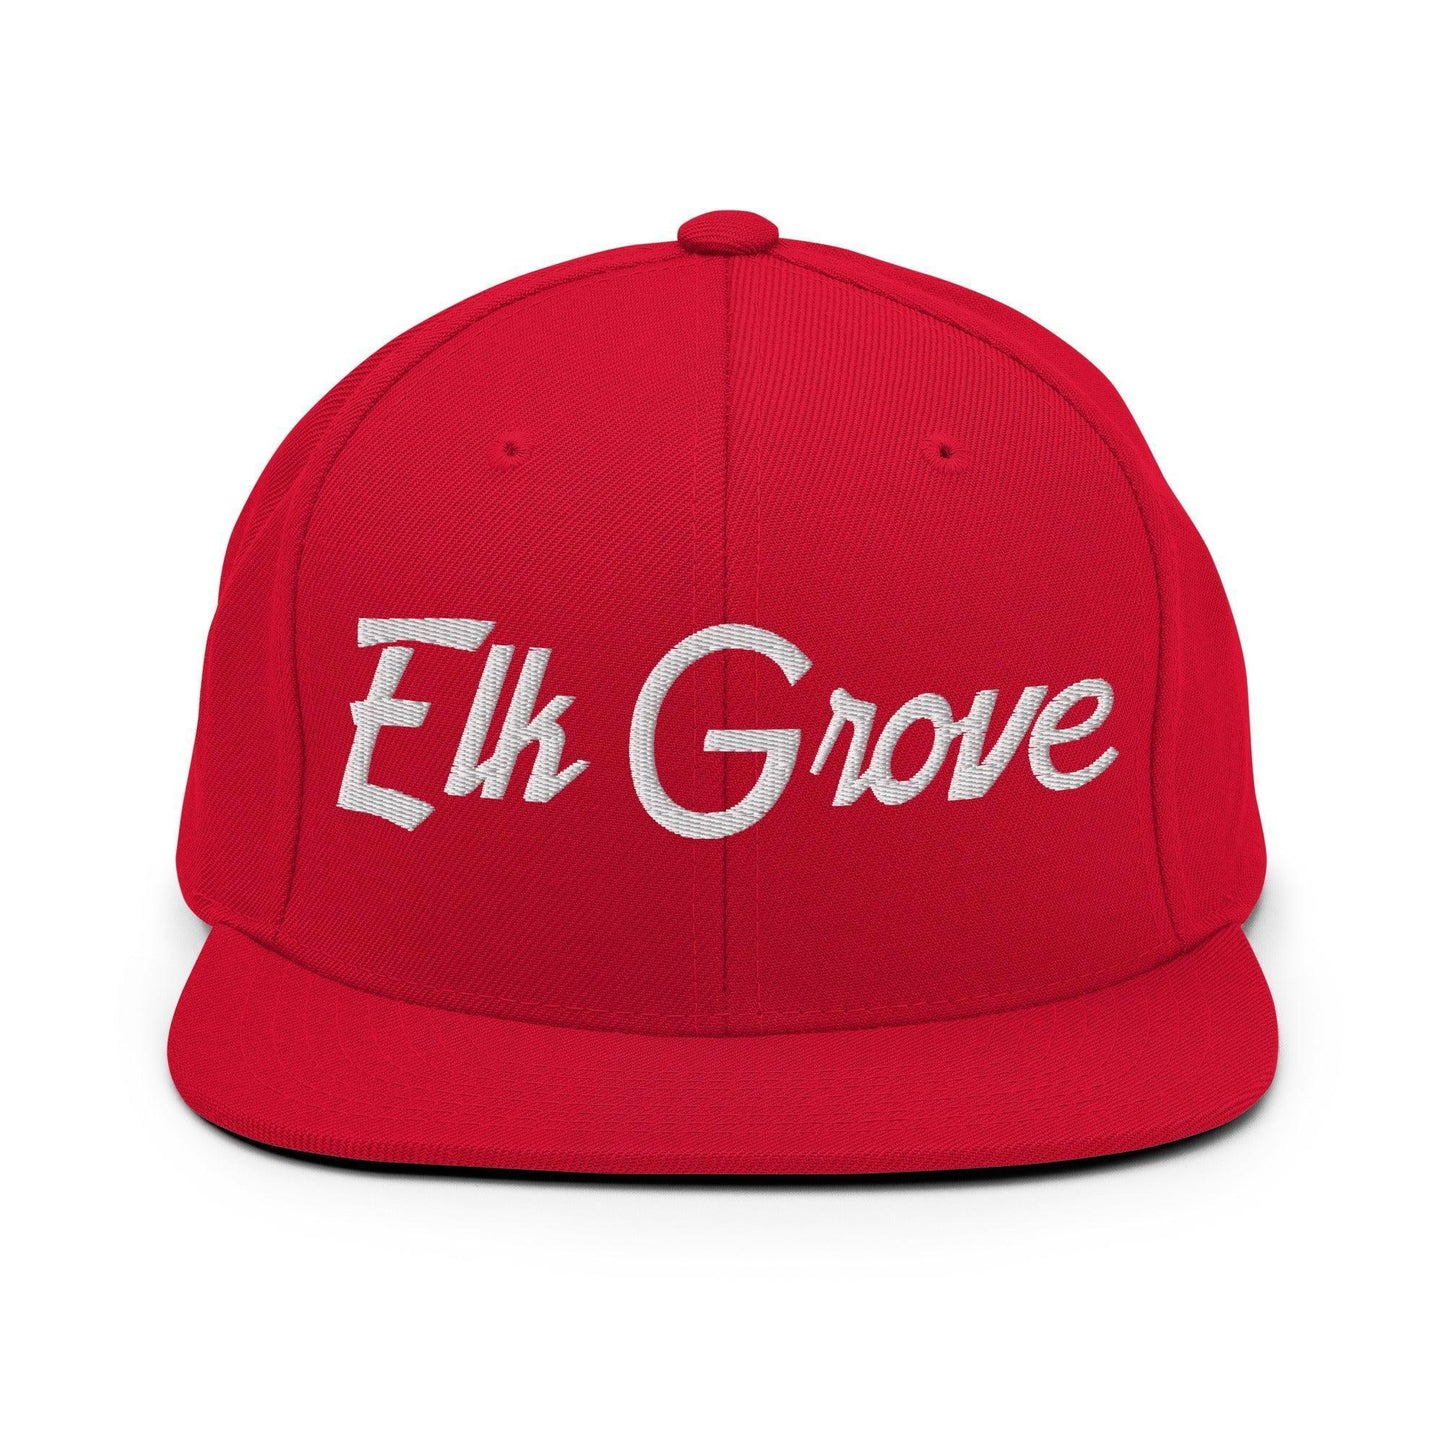 Elk Grove Script Snapback Hat Red